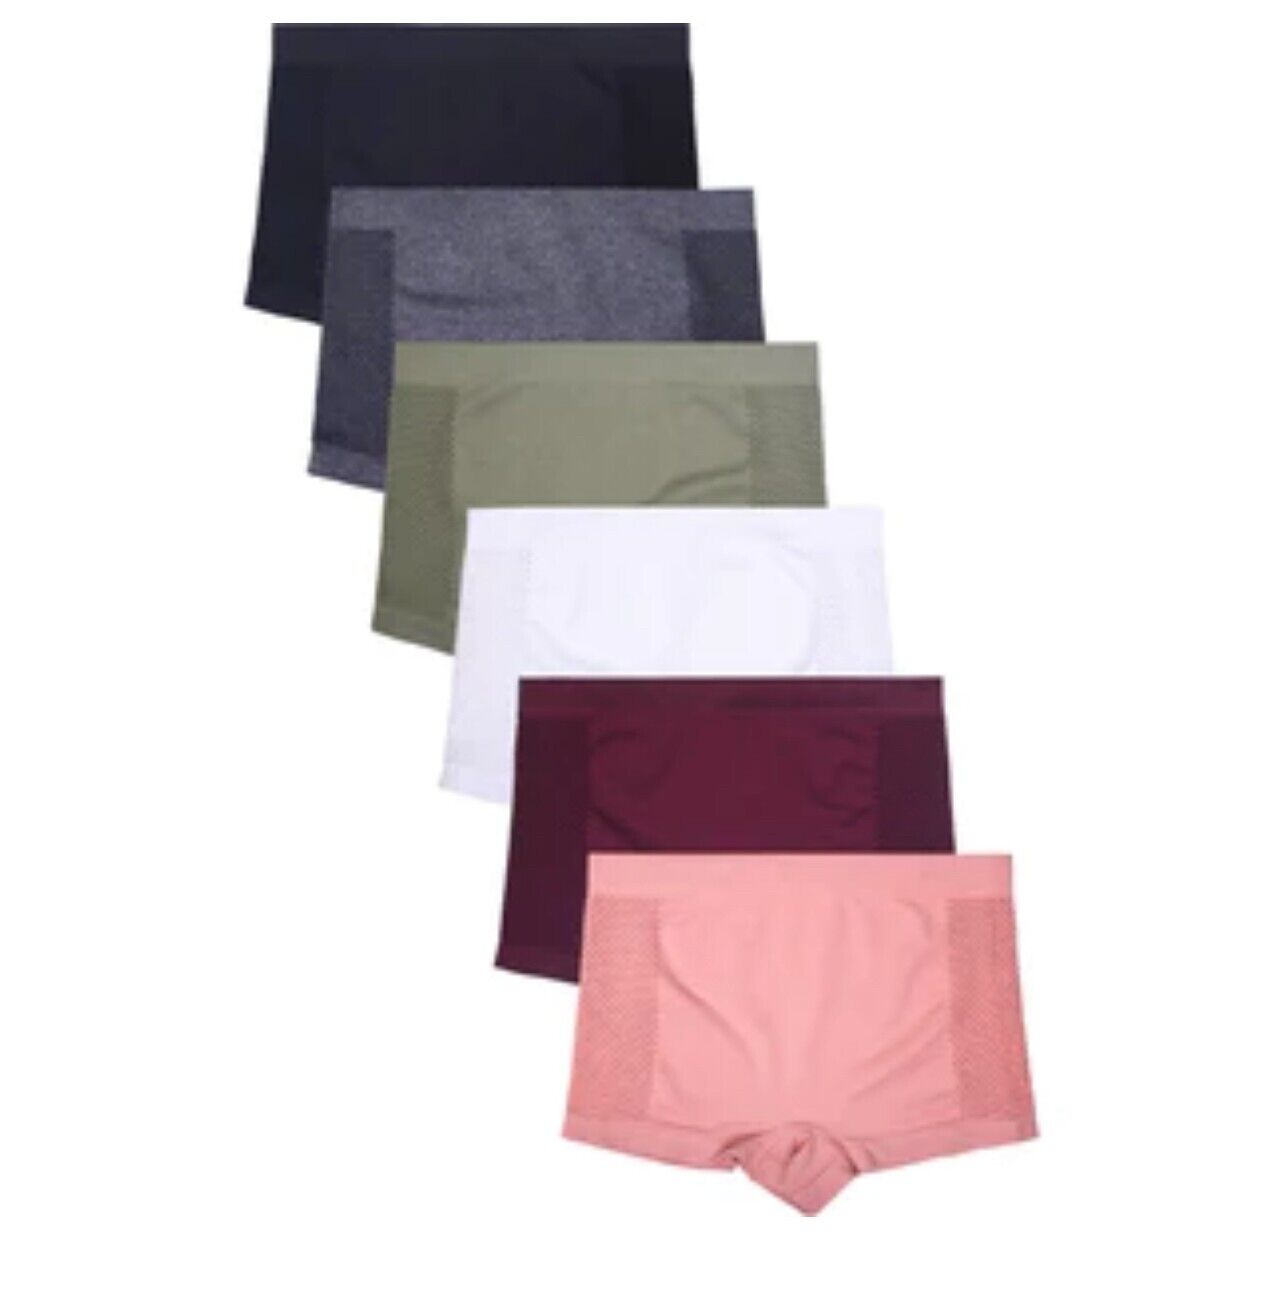 6 Boyshorts sport Active Wear Yoga Seamless Short undies shortie Underwear S-XL EVA - фотография #2